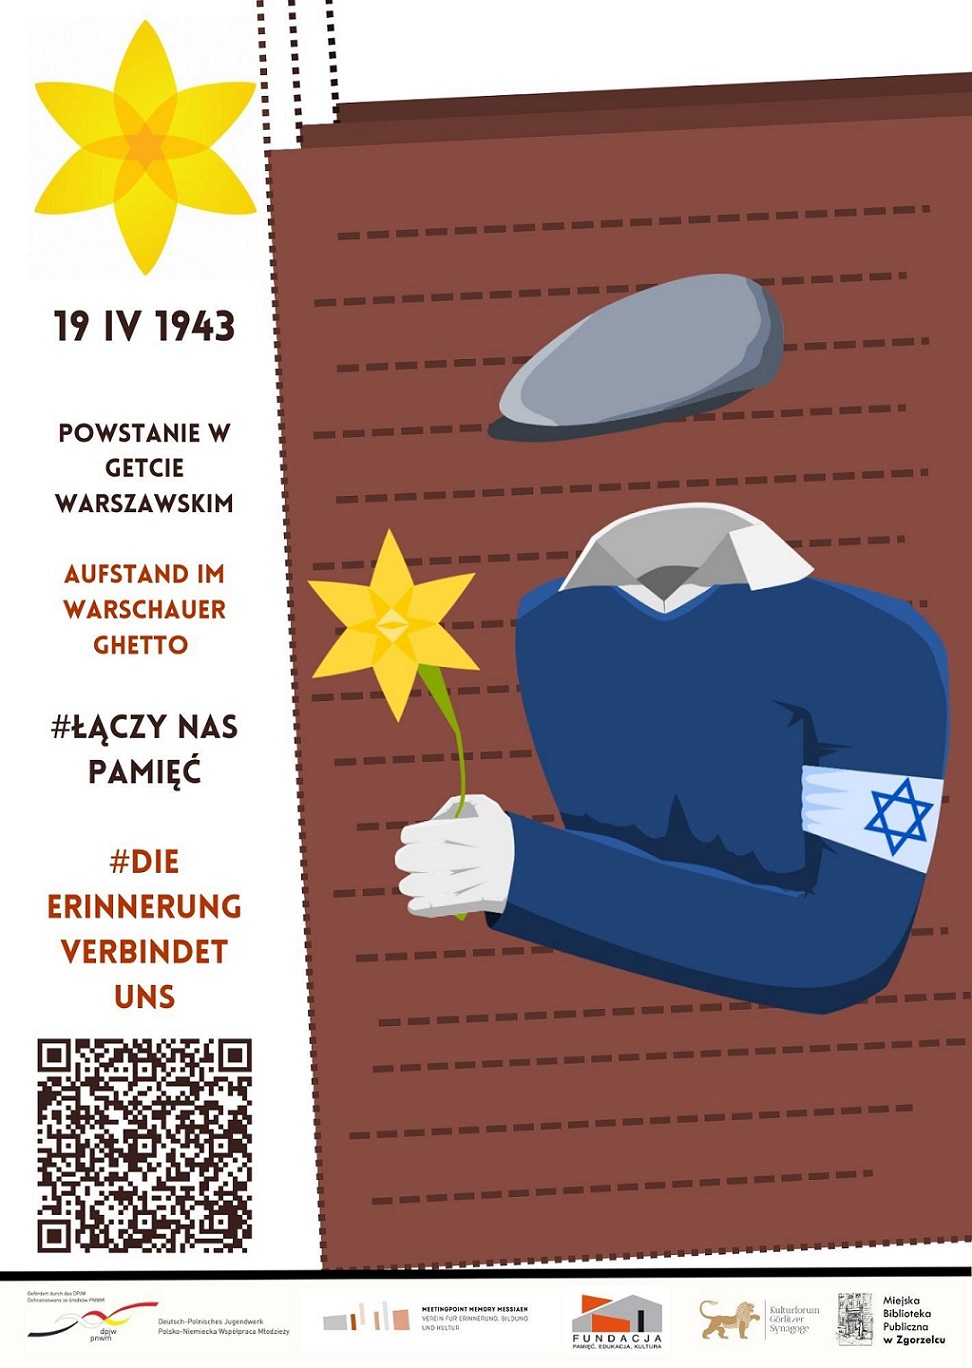 Plakat promujący akcję społeczno-edukacyjną Żonkile. Plakat jest odnośnikiem do wpisu "Młodzież upamiętni powstanie w getcie warszawskim".